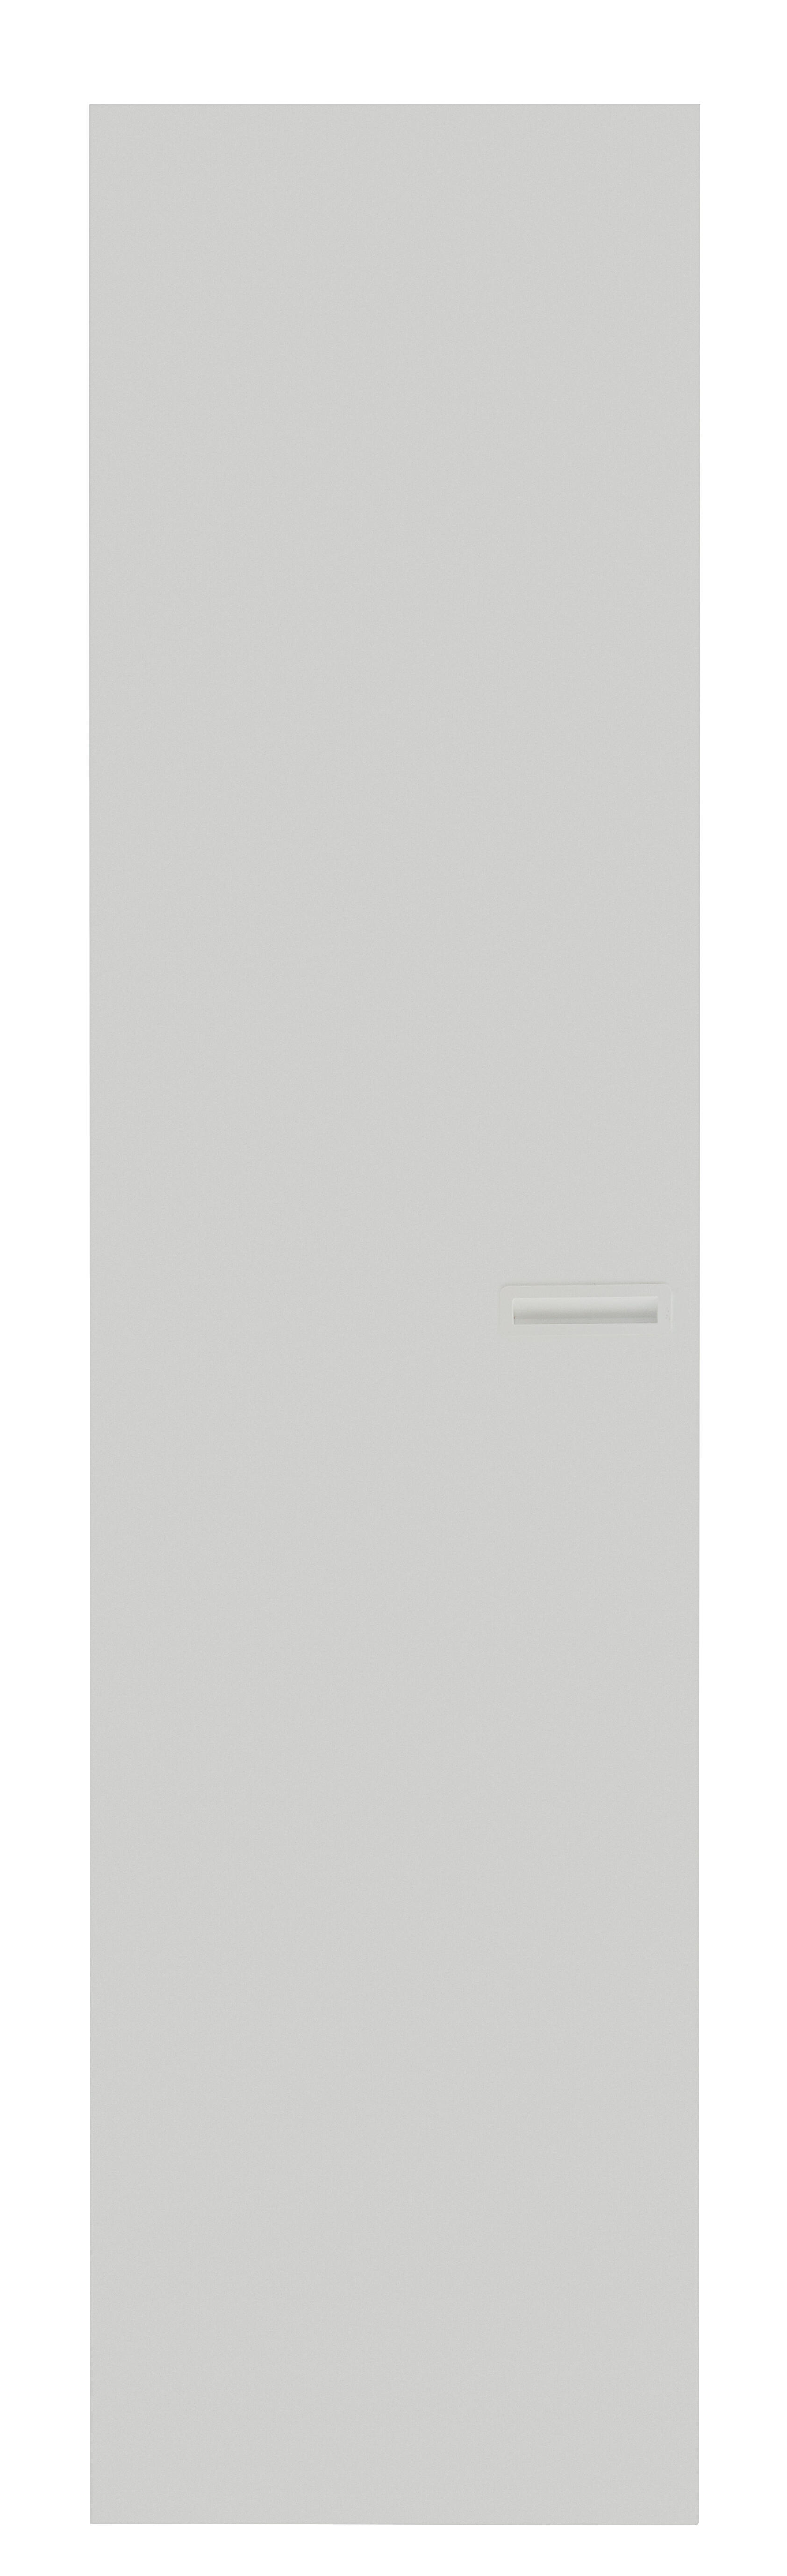 Puerta abatible para armario tokyo blanco 60x240x1,6 cm